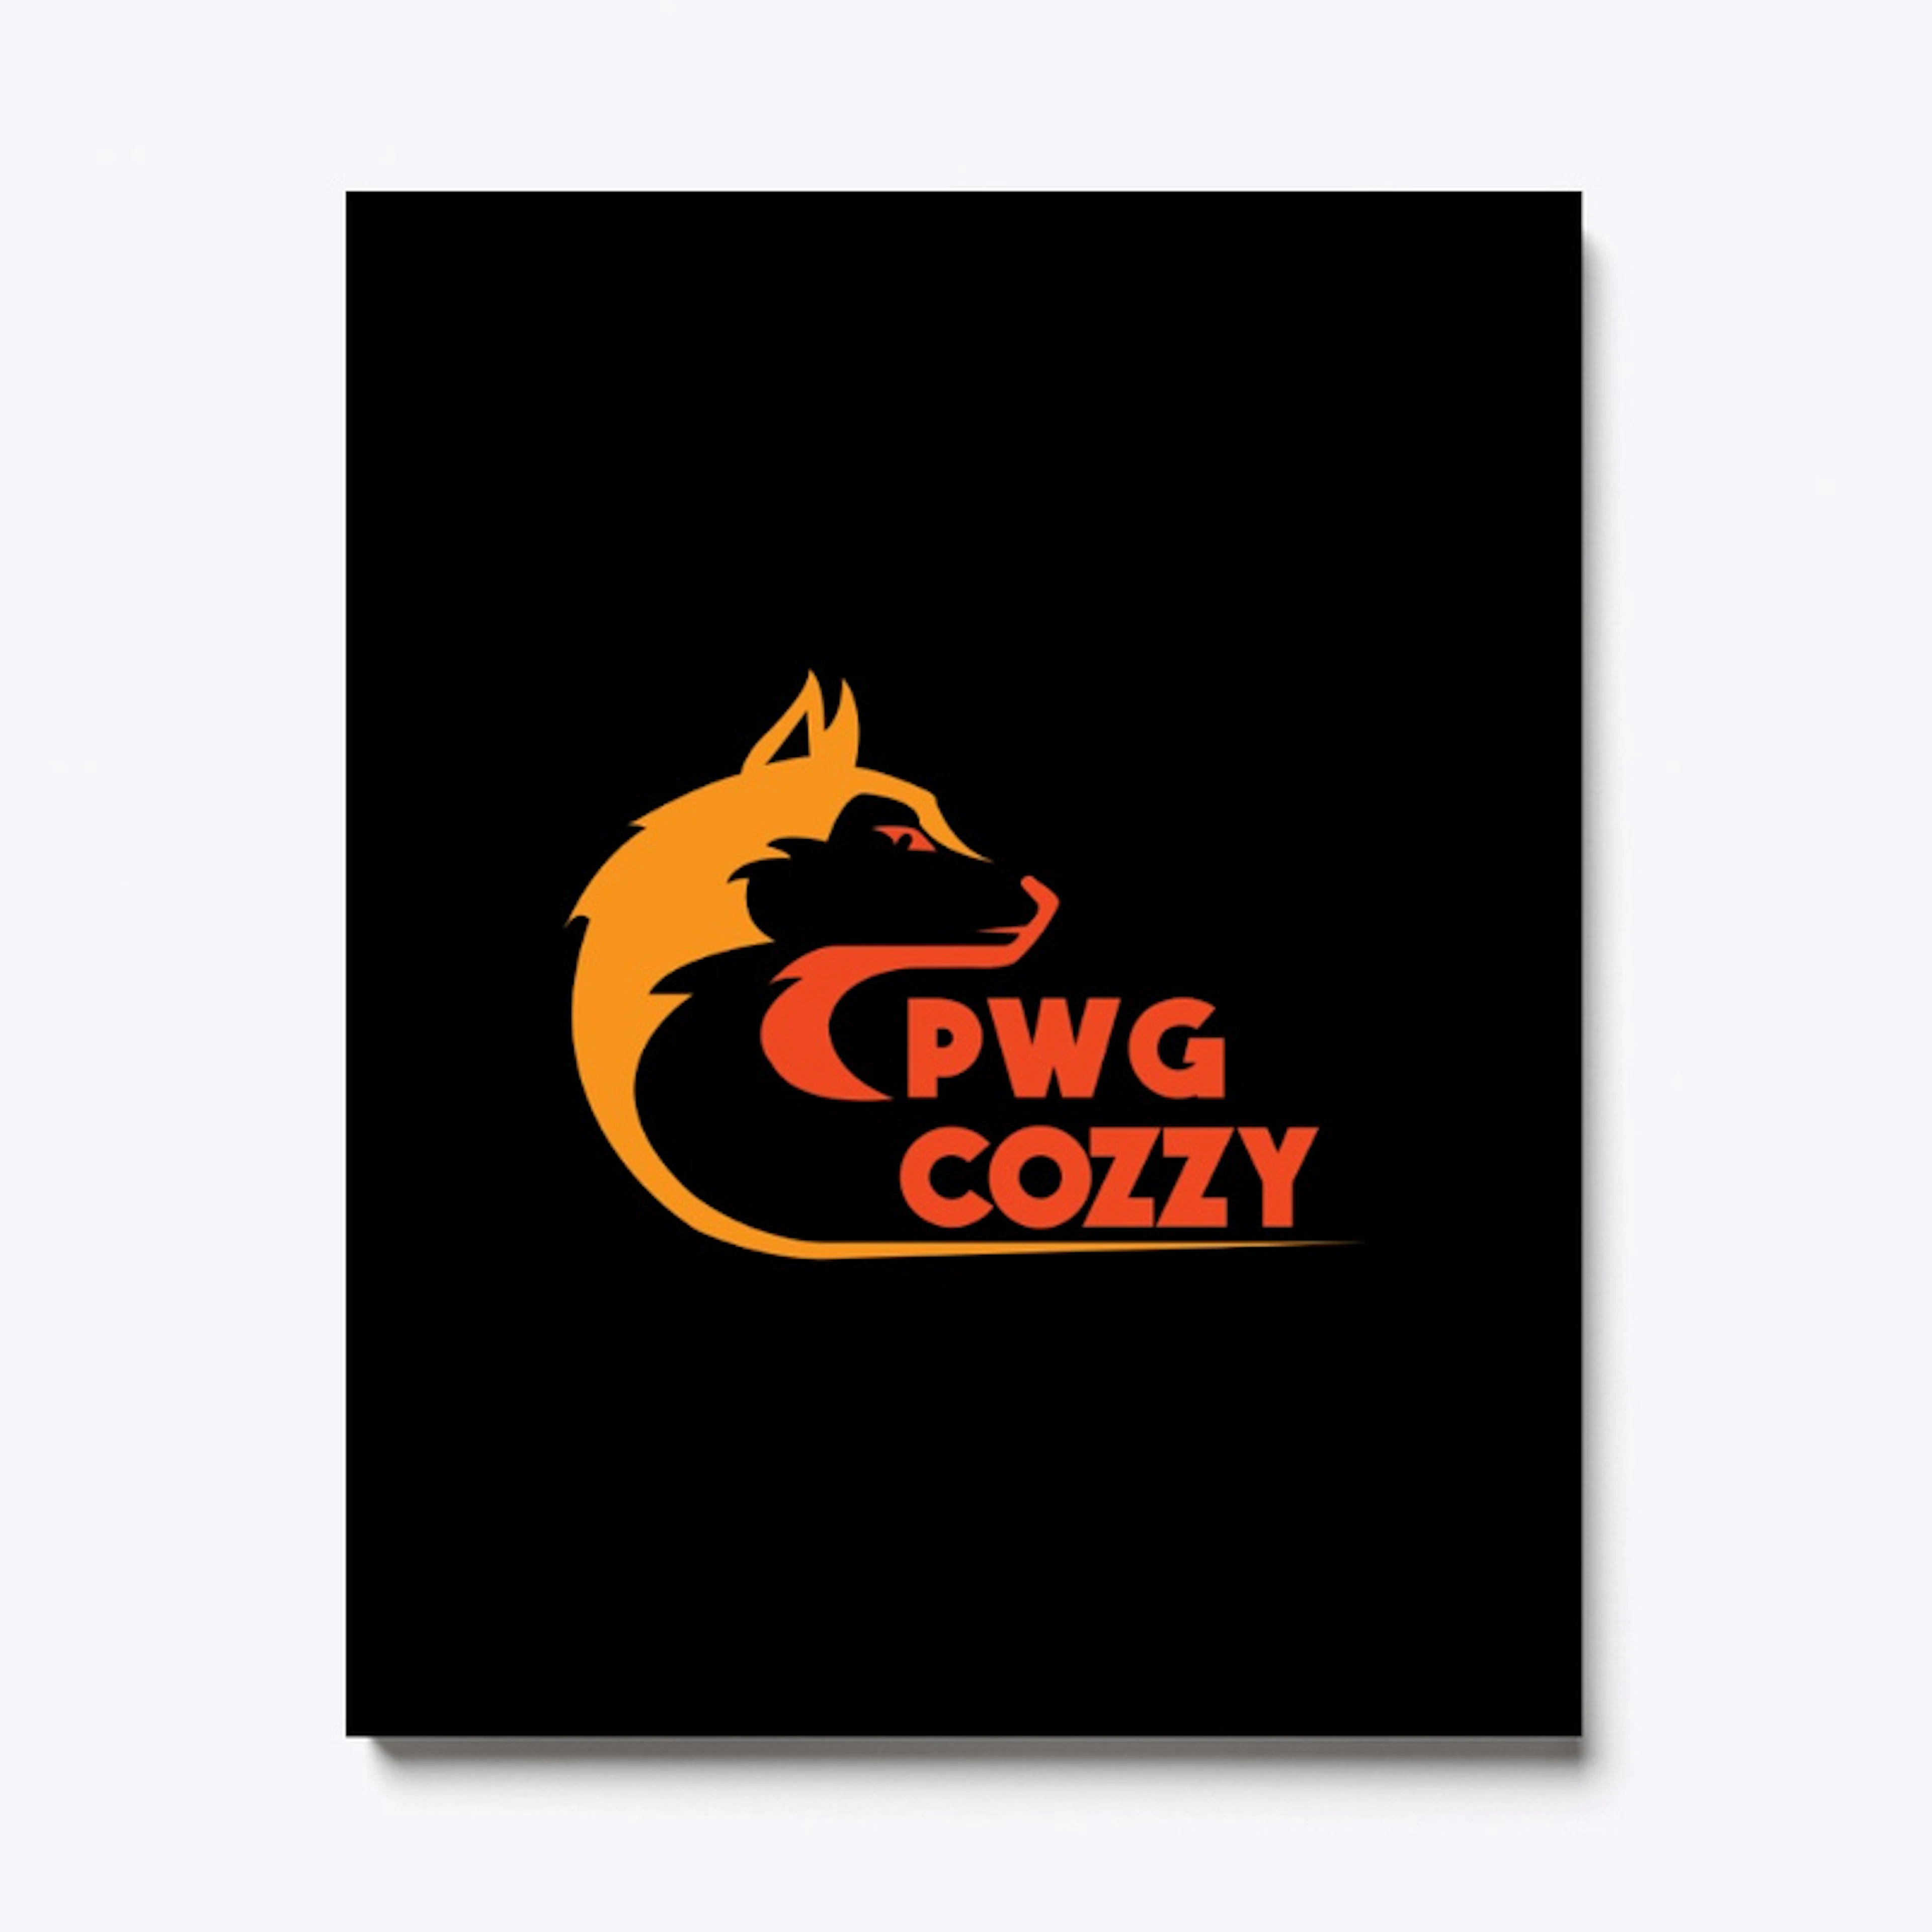 PWG Cozzy bedroom merch